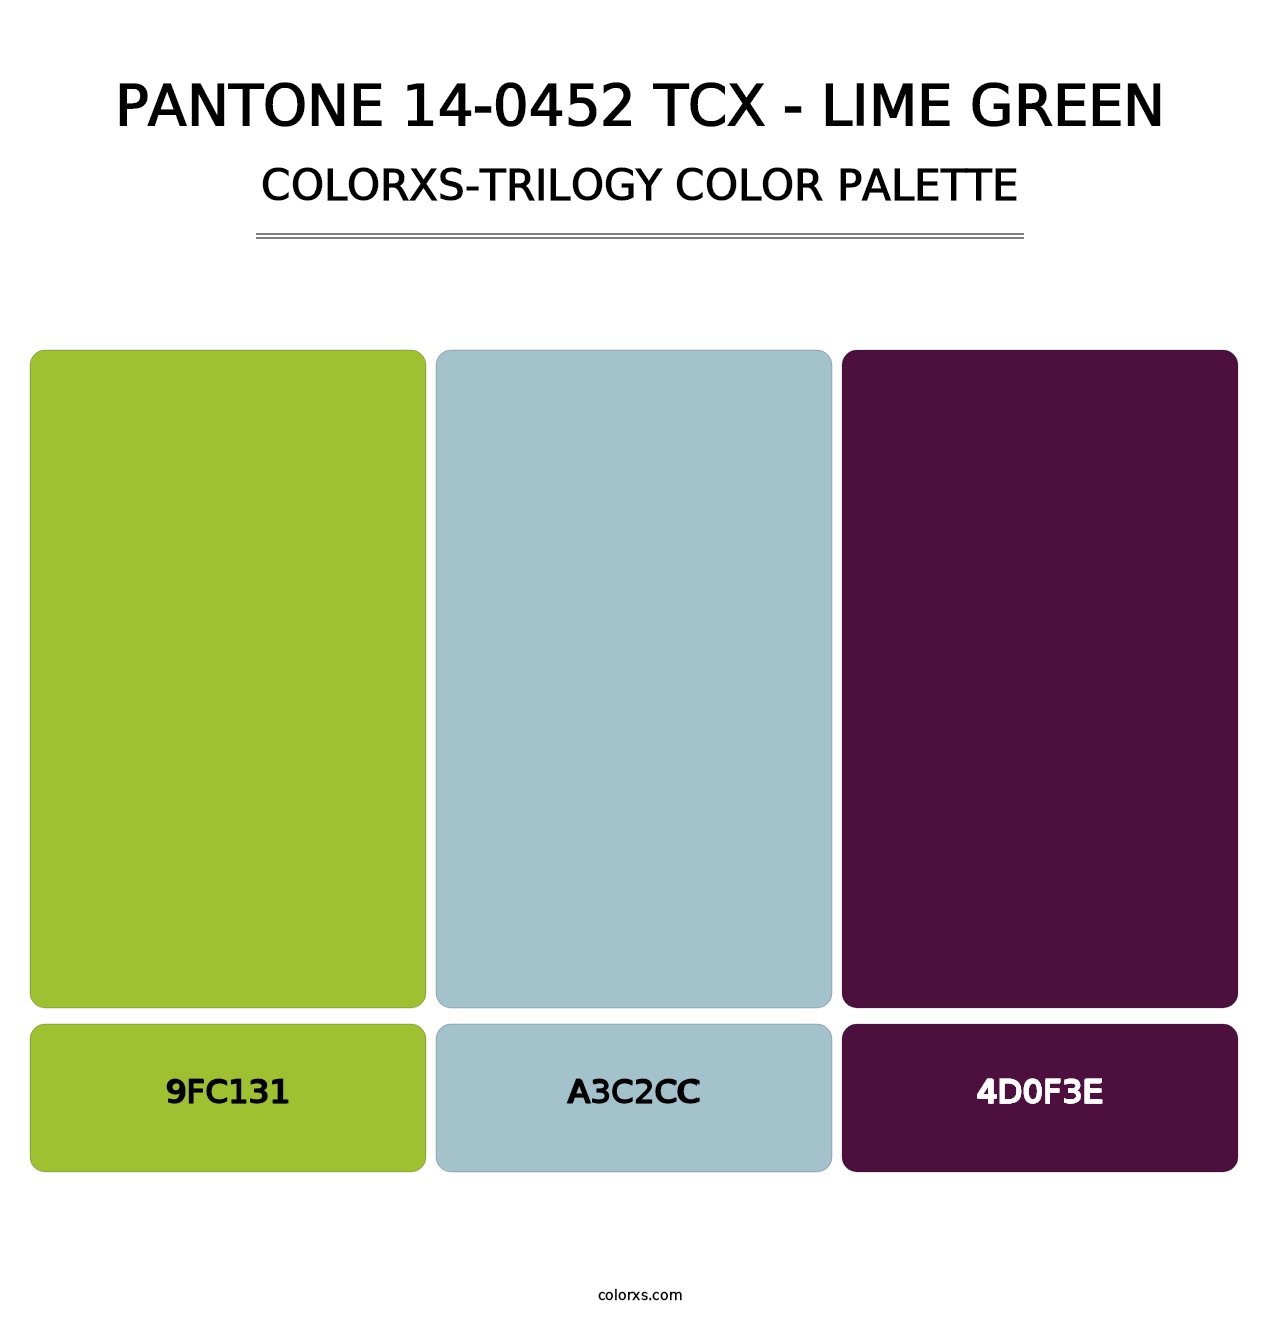 PANTONE 14-0452 TCX - Lime Green - Colorxs Trilogy Palette